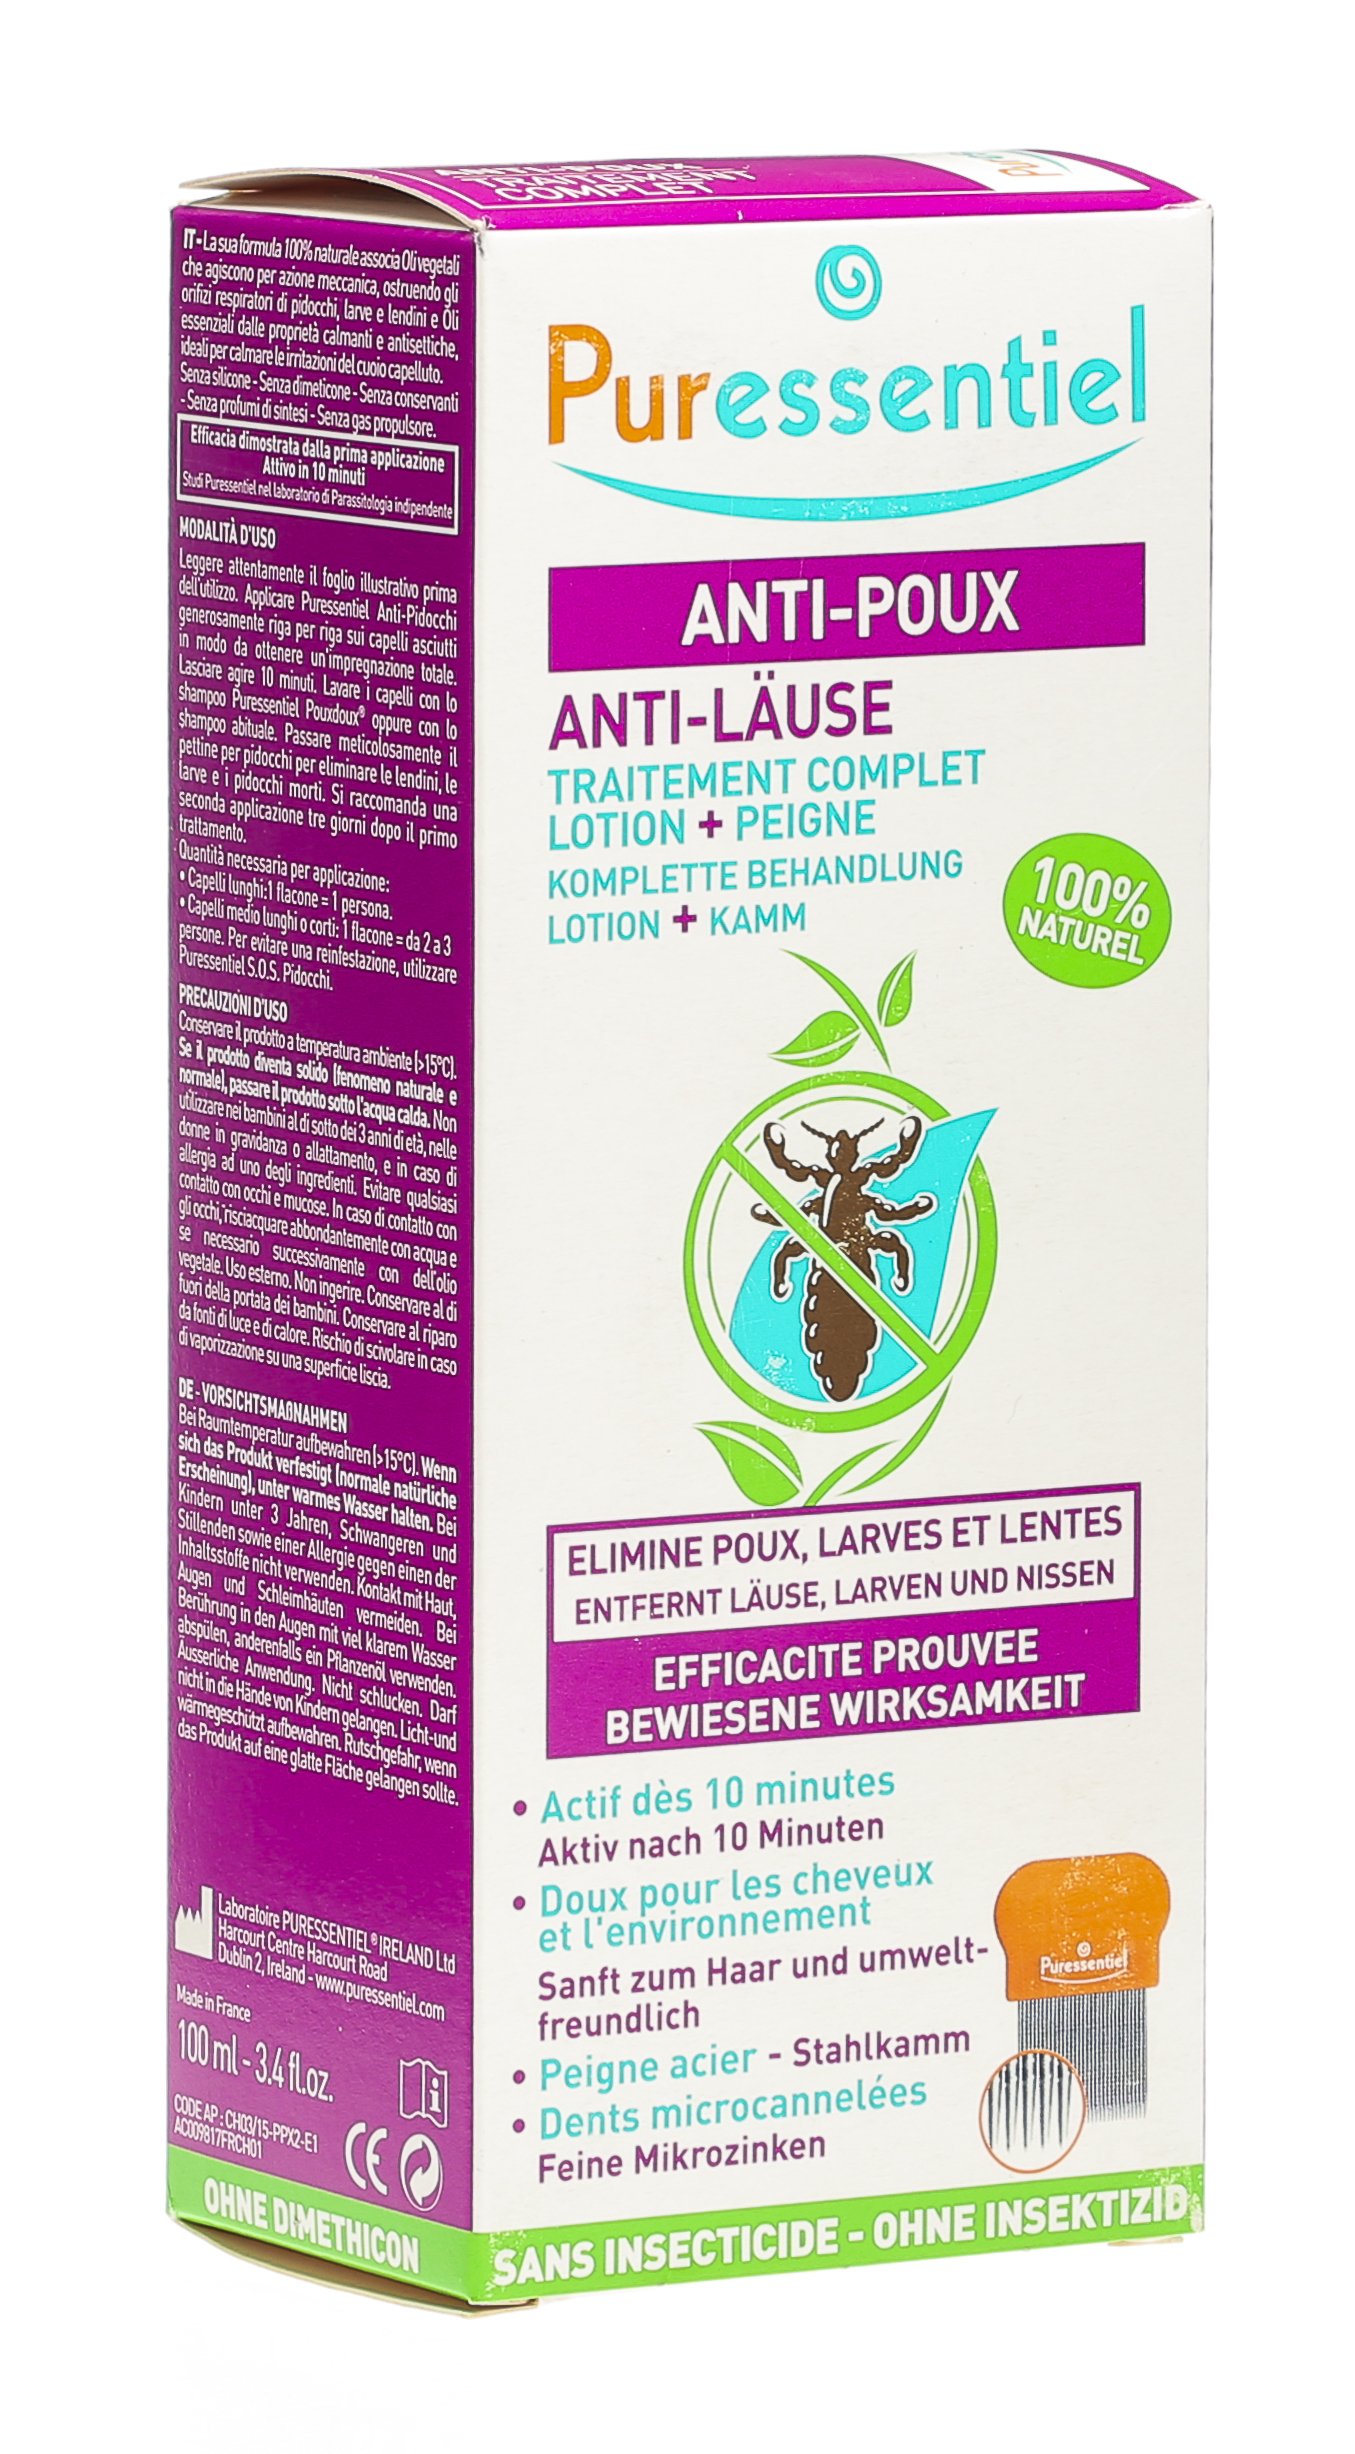 Puressentiel anti-poux lotion+peigne pour des cheveux propres et brillants.